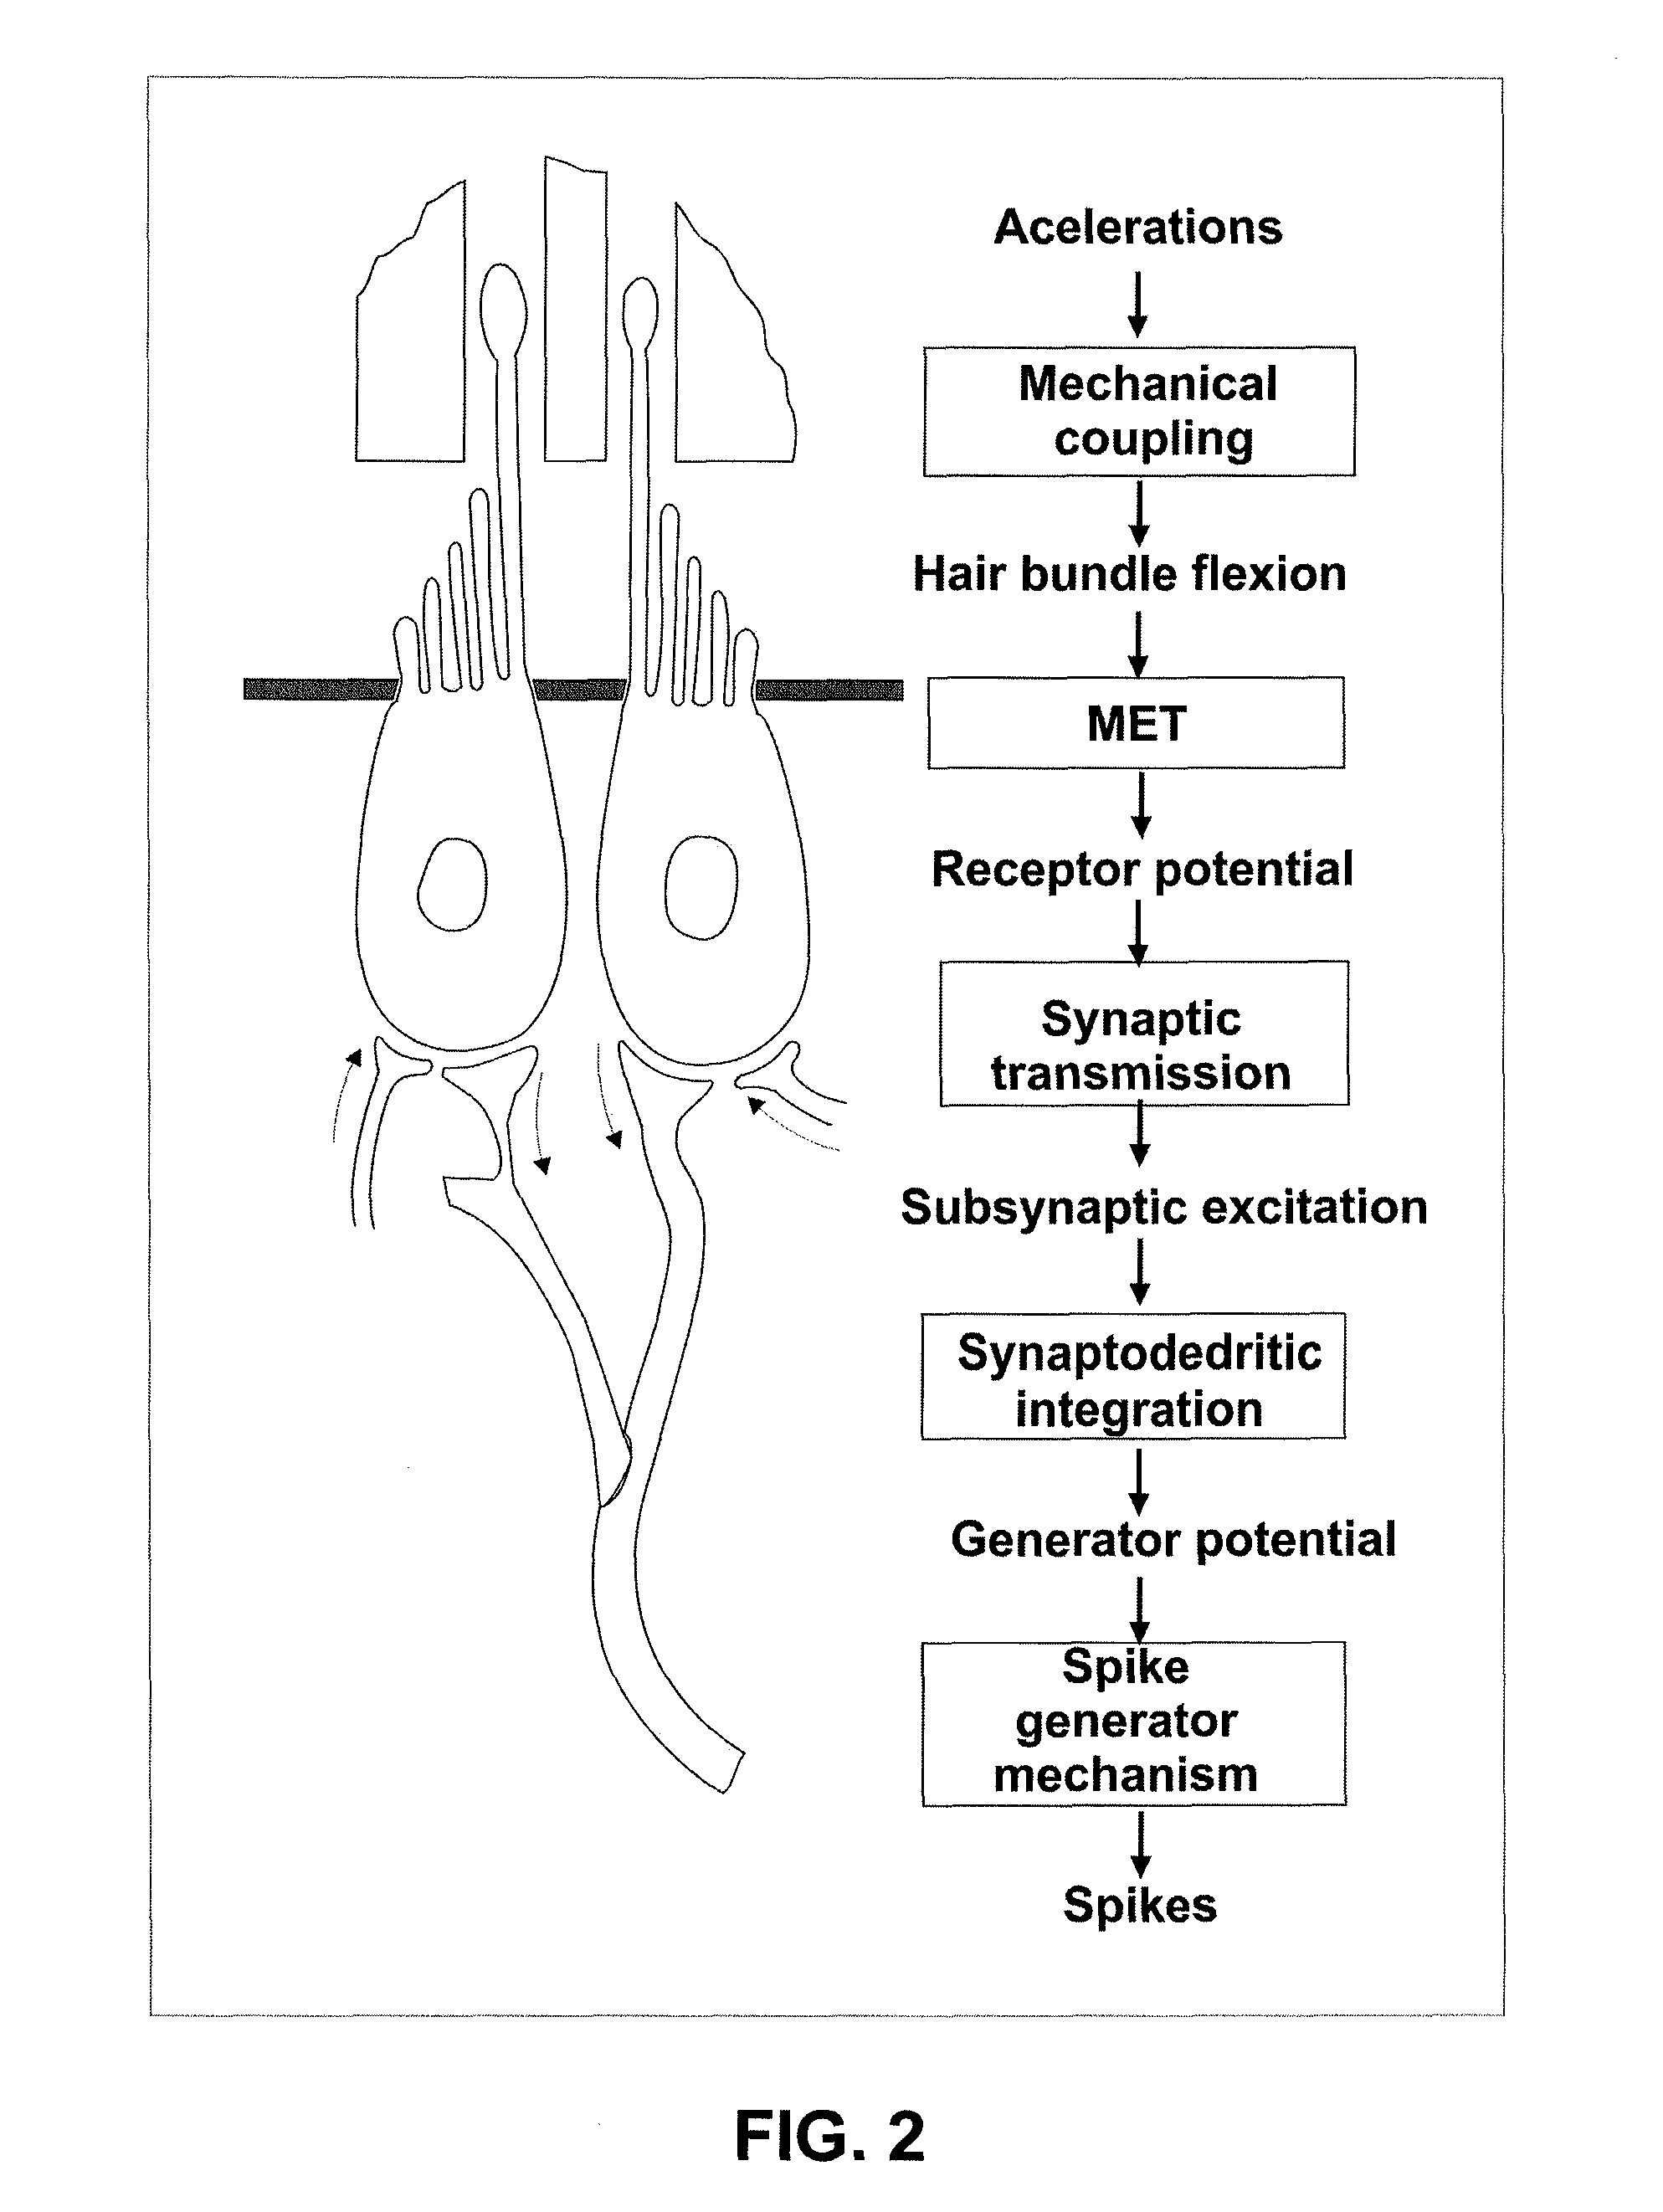 Vestibular prosthesis